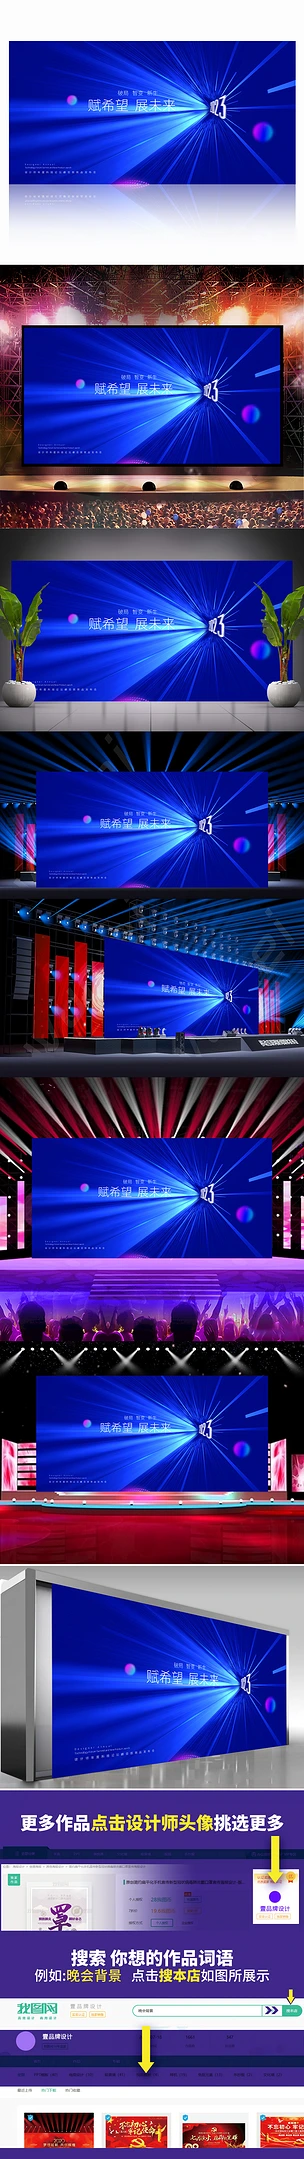 蓝色科技背景板科技会议背景展板互联网舞台背景